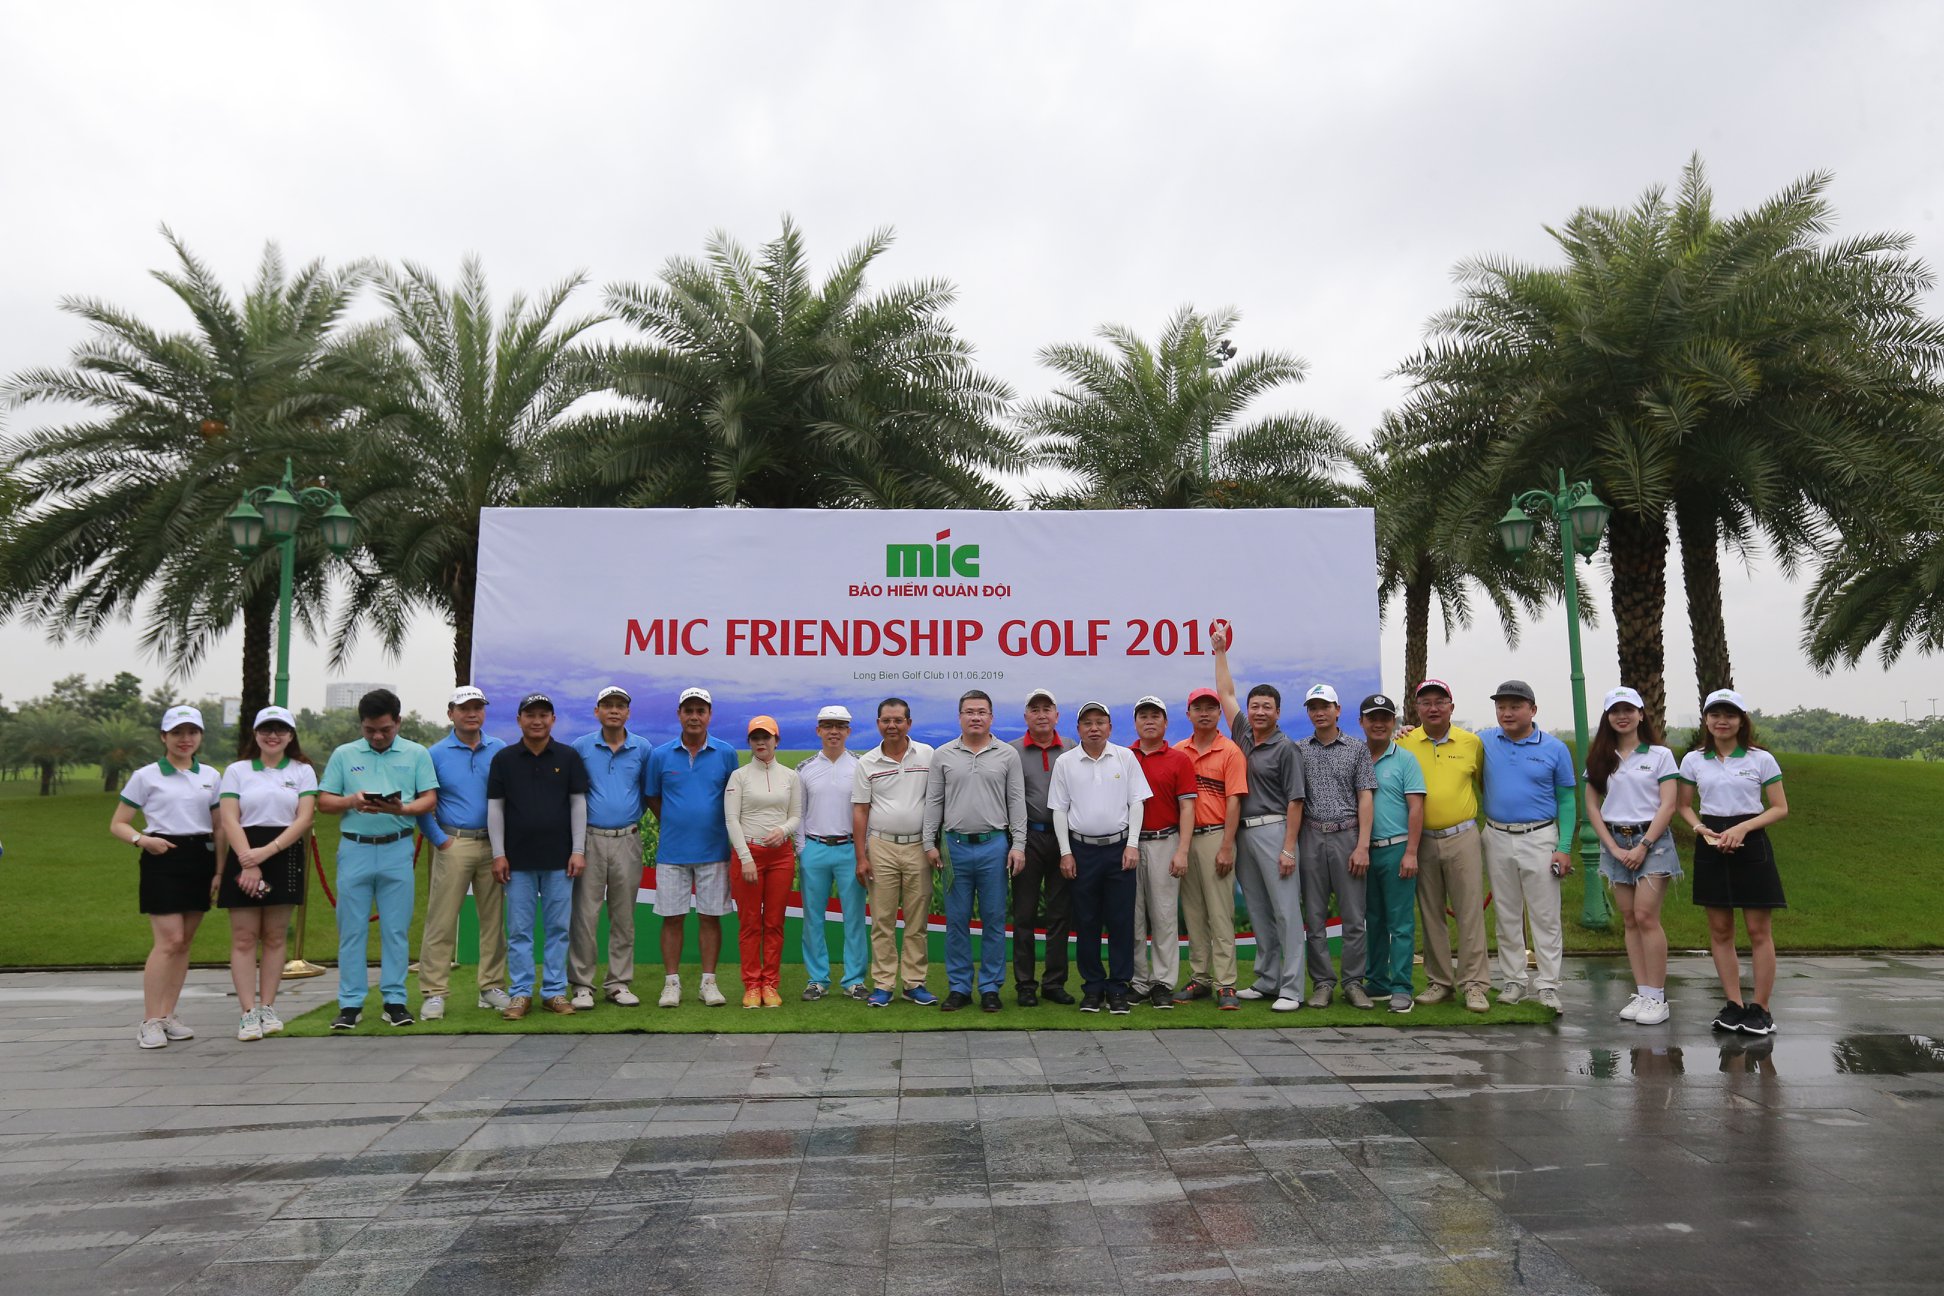 GIẢI GOLF MIC FRIENDSHIP 2019 - Sân golf Long Biên